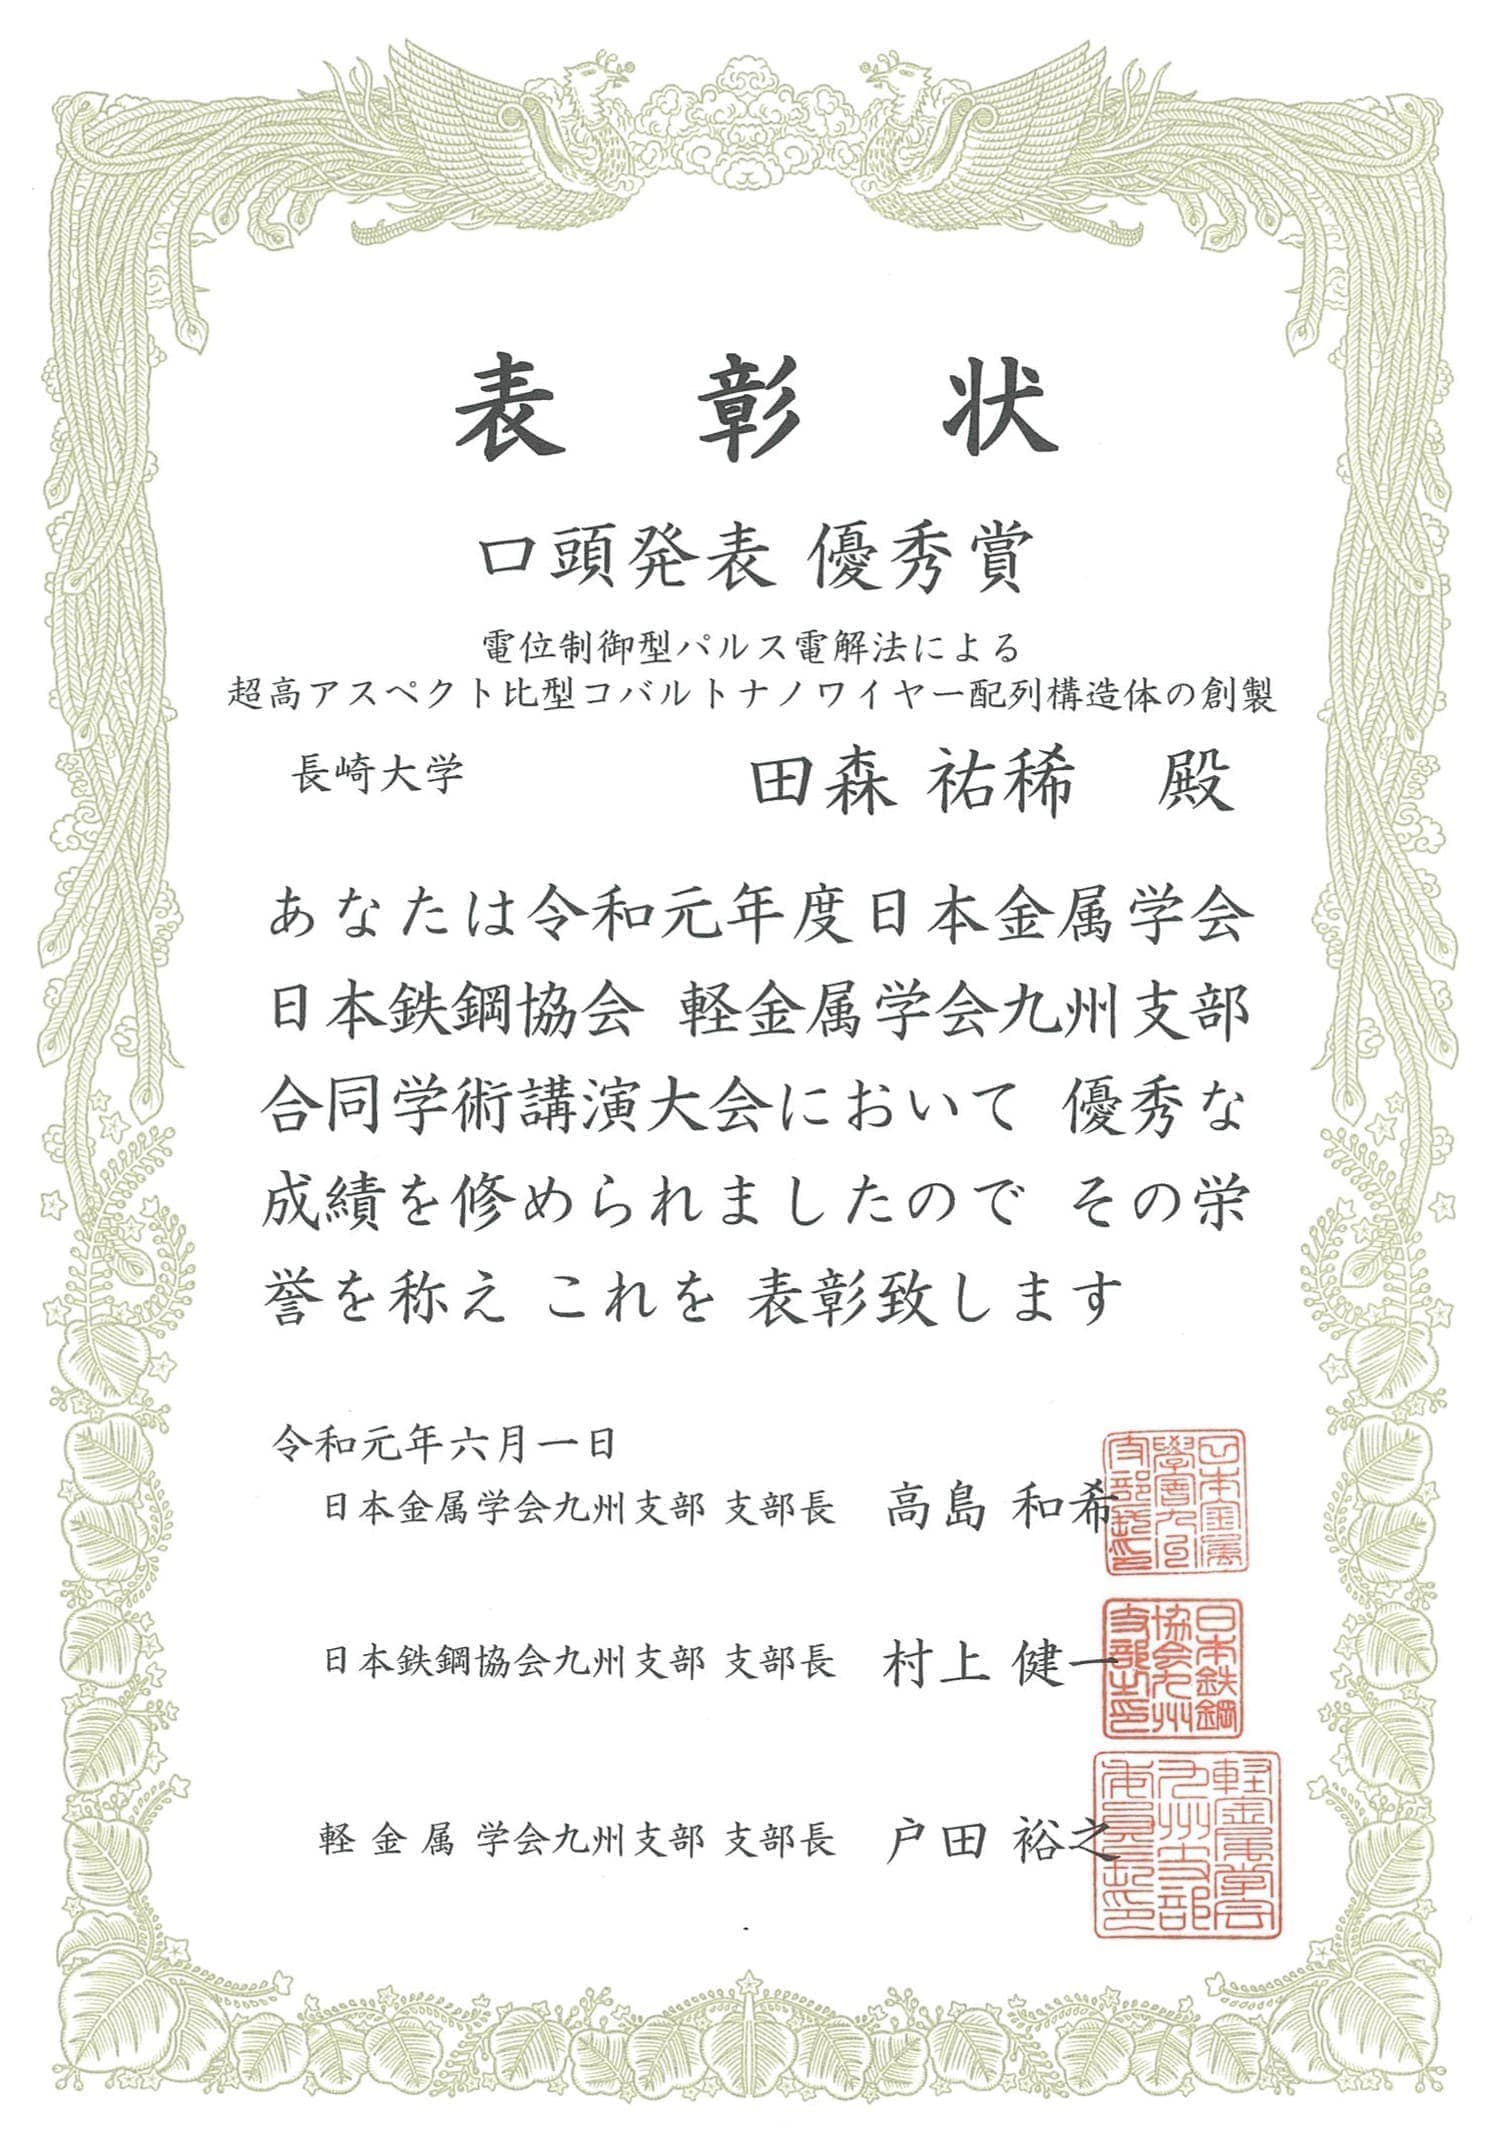 田森祐稀君(M1)が、日本金属学会・日本鉄鋼協会・軽金属学会九州支部合同学術講演大会において、口頭発表優秀賞を受賞しました。2019/06/01